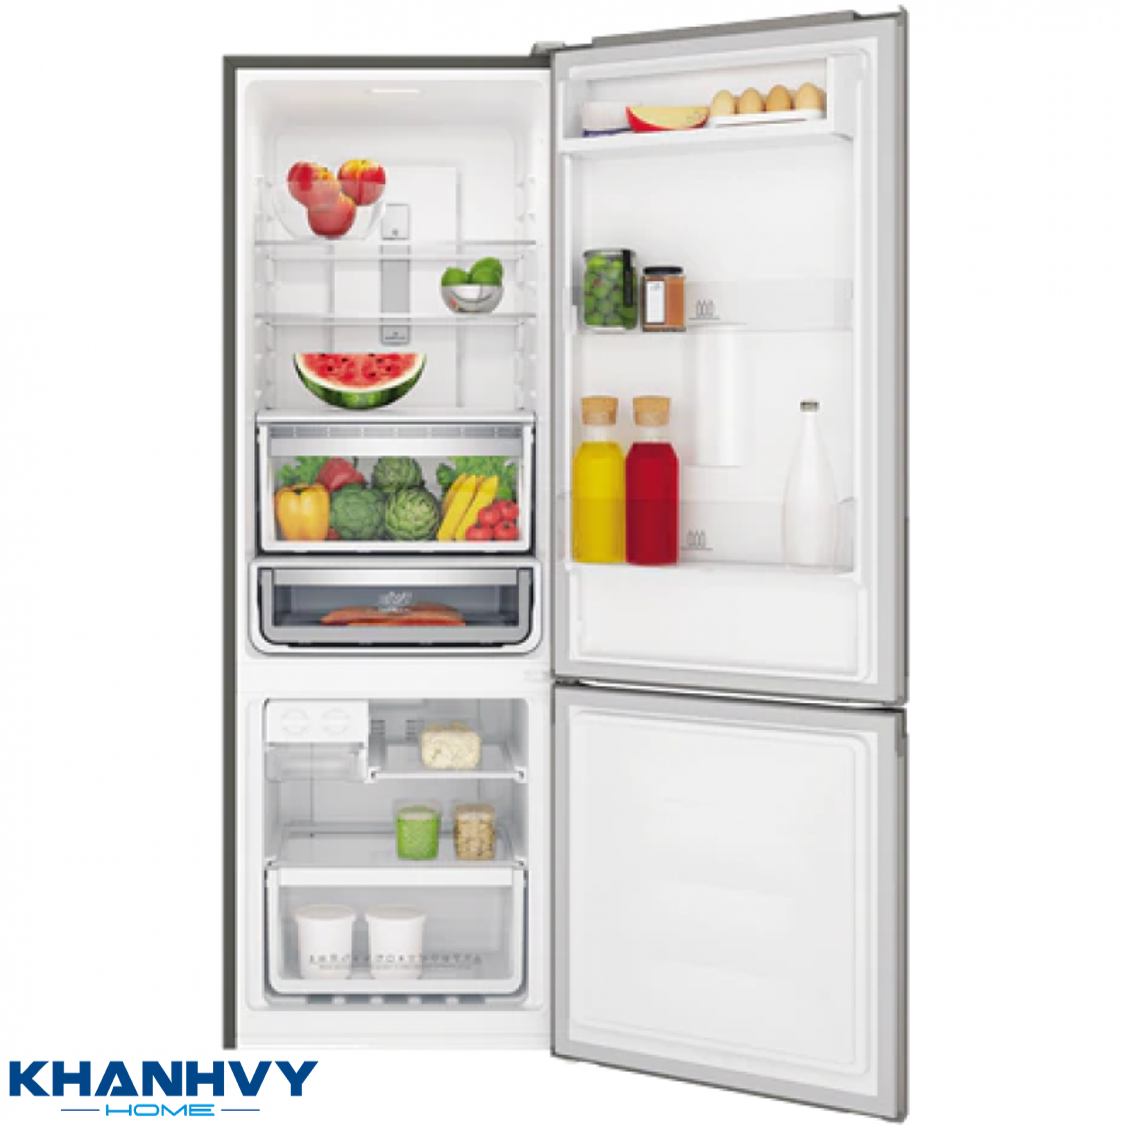 Tủ lạnh Electrolux EBB3702K-A được thiết kế hiện đại và sang trọng, thích hợp cho 2 – 3 người sử dụng